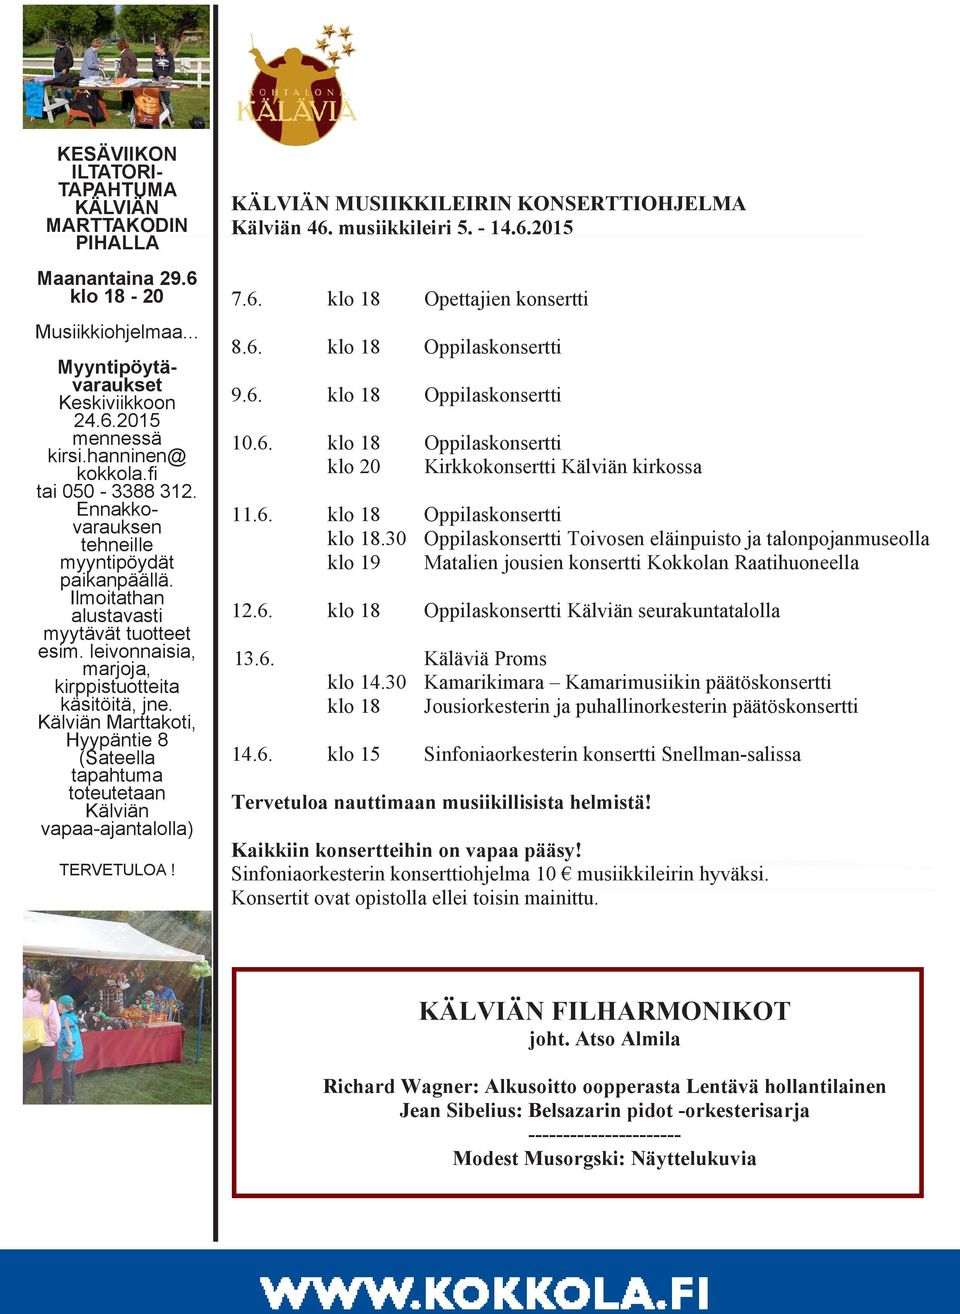 Kälviän Marttakoti, Hyypäntie 8 (Sateella tapahtuma toteutetaan Kälviän vapaa-ajantalolla) TERVETULOA! KÄLVIÄN MUSIIKKILEIRIN KONSERTTIOHJELMA Kälviän 46. musiikkileiri 5. - 14.6.2015 7.6. klo 18 Opettajien konsertti 8.